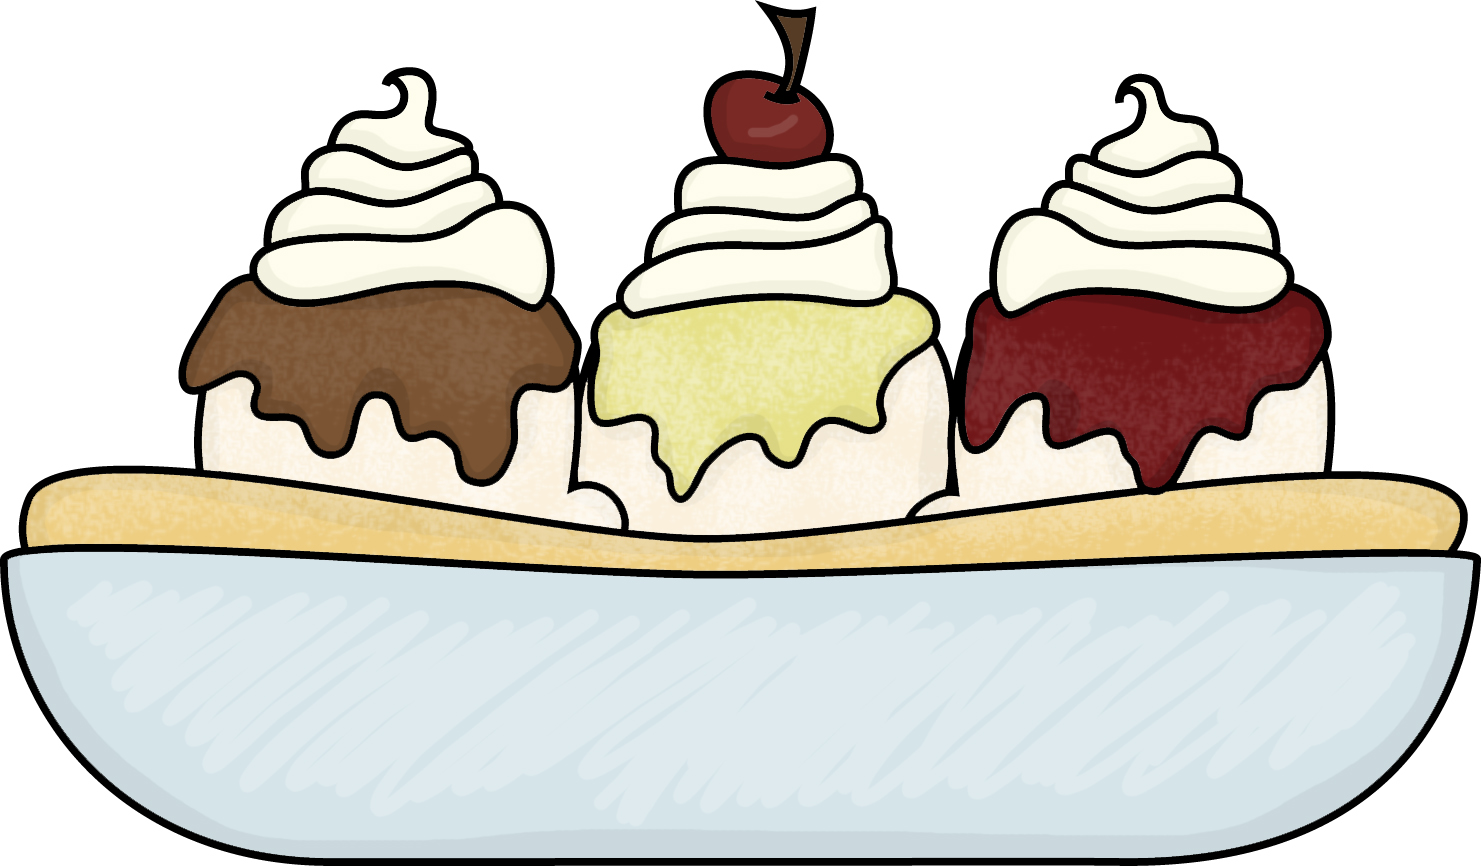 clip art ice cream scoop - photo #36